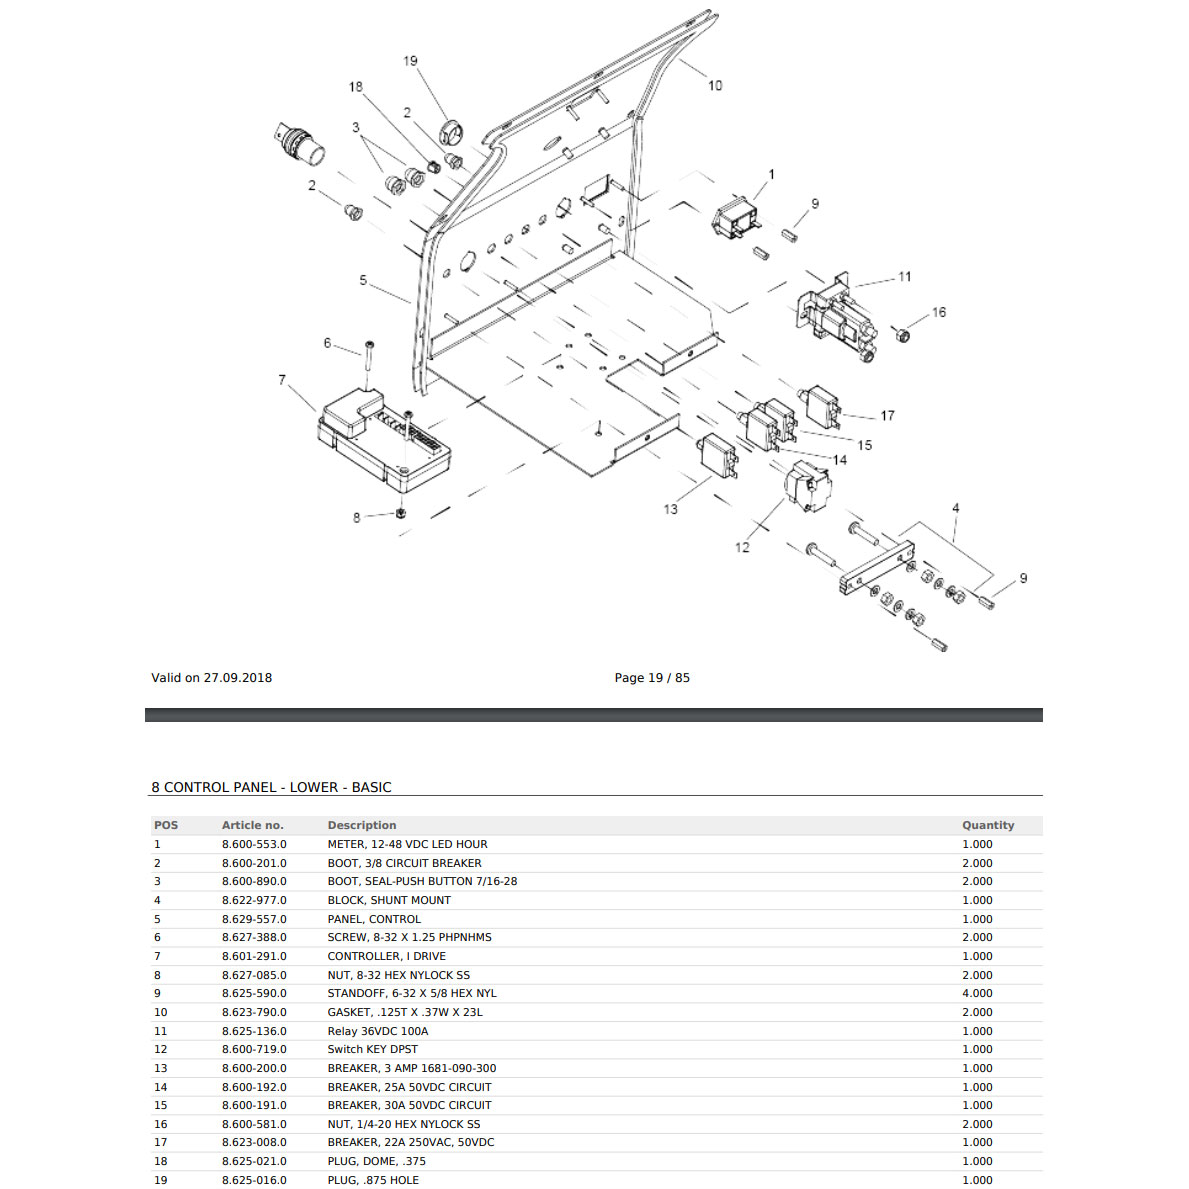 Karcher Windsor Relay 36 VDC 100 amp [8.625-136.0] 86251360